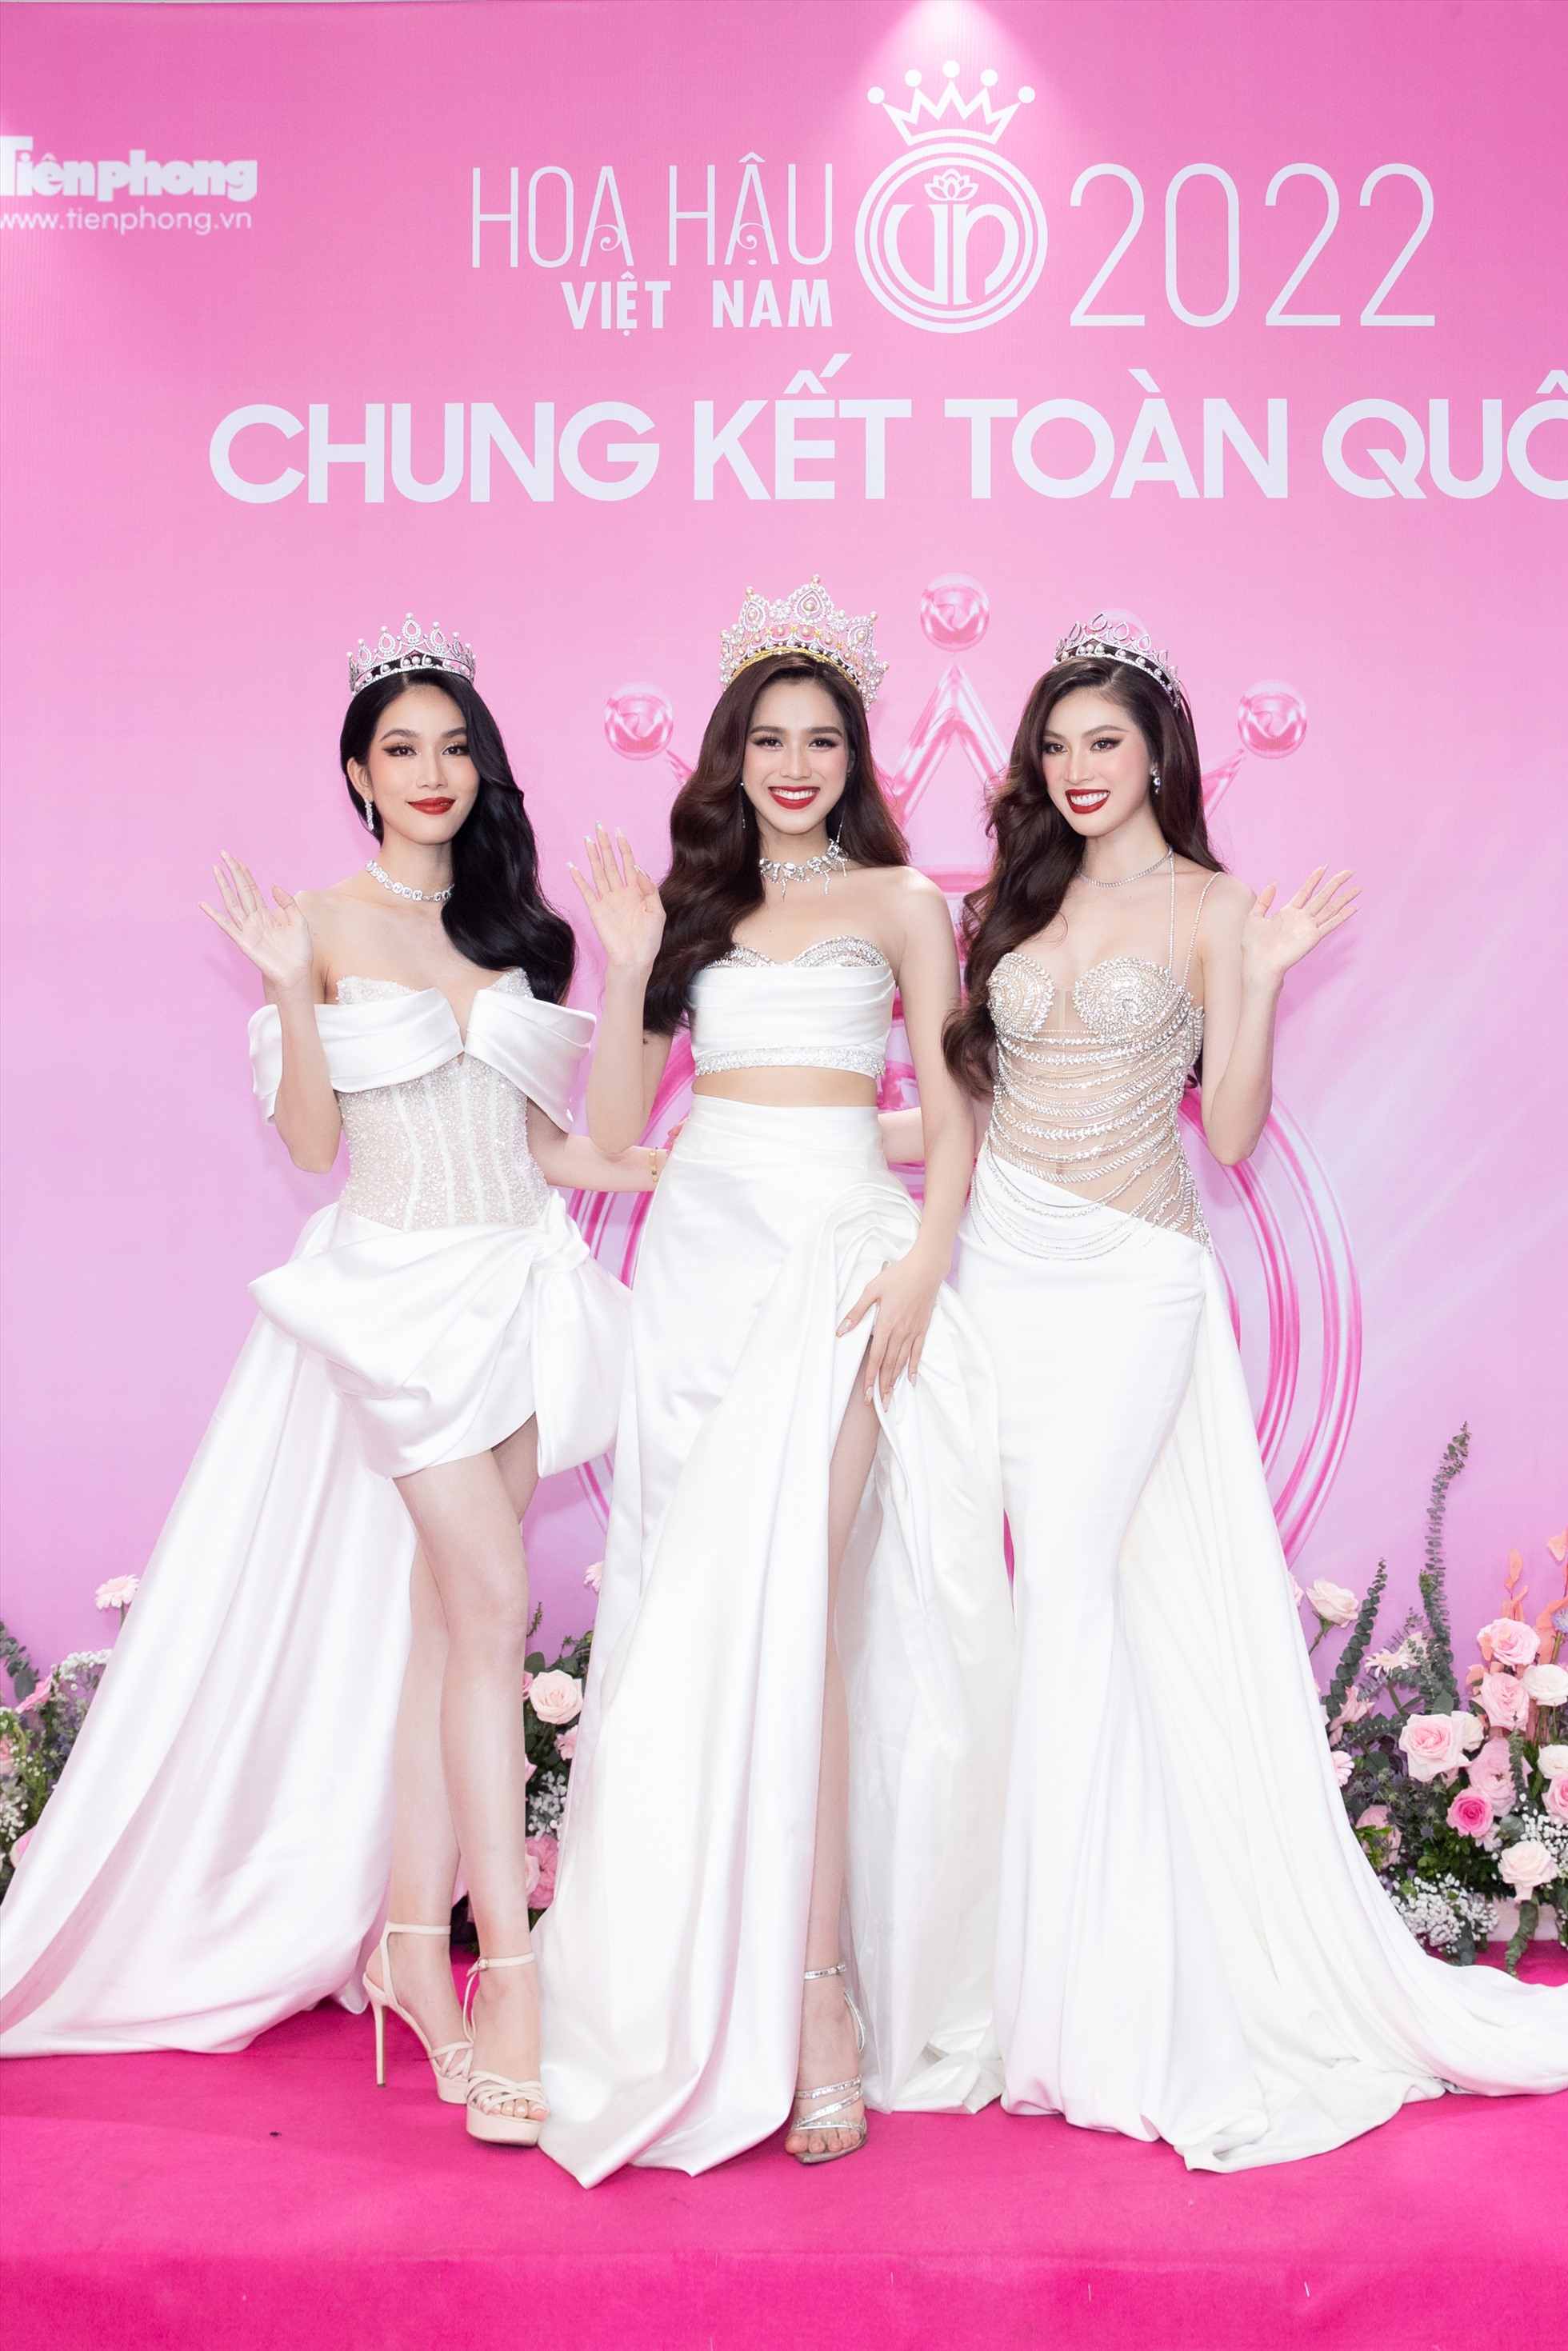 Thảm đỏ cũng tỏa hương sắc với sự hiện diện của dàn Hoa, Á hậu đình đám nhất hiện tại như top 3 Hoa hậu Việt Nam 2020: Hoa hậu Đỗ Hà, Á hậu Phương Anh, Á hậu Ngọc Thảo.